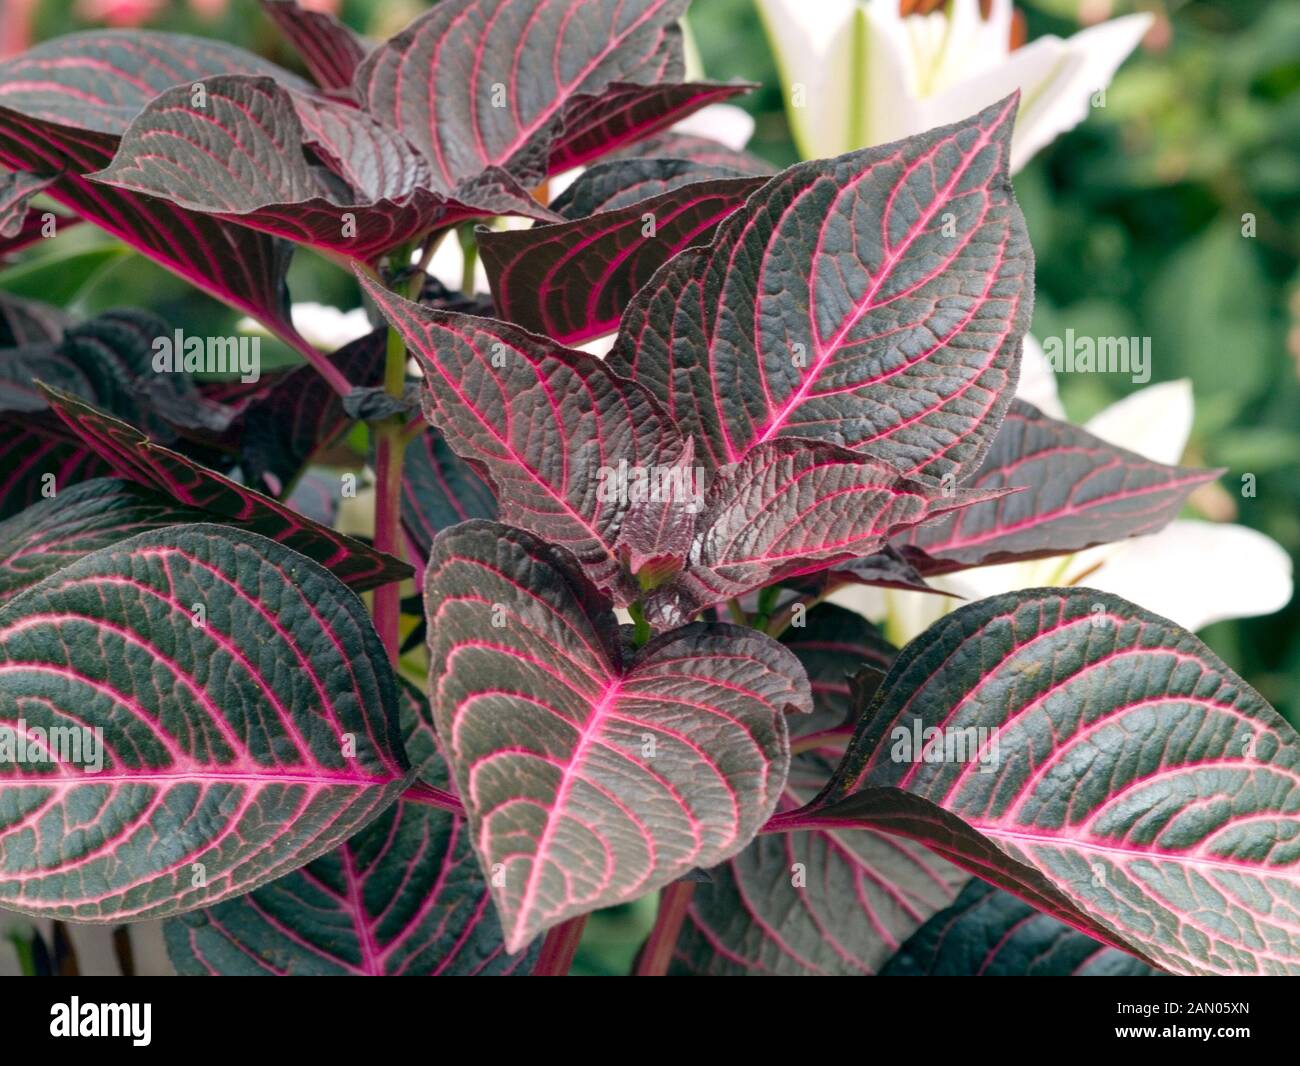 Комнатное растение с бордово-зелеными листьями